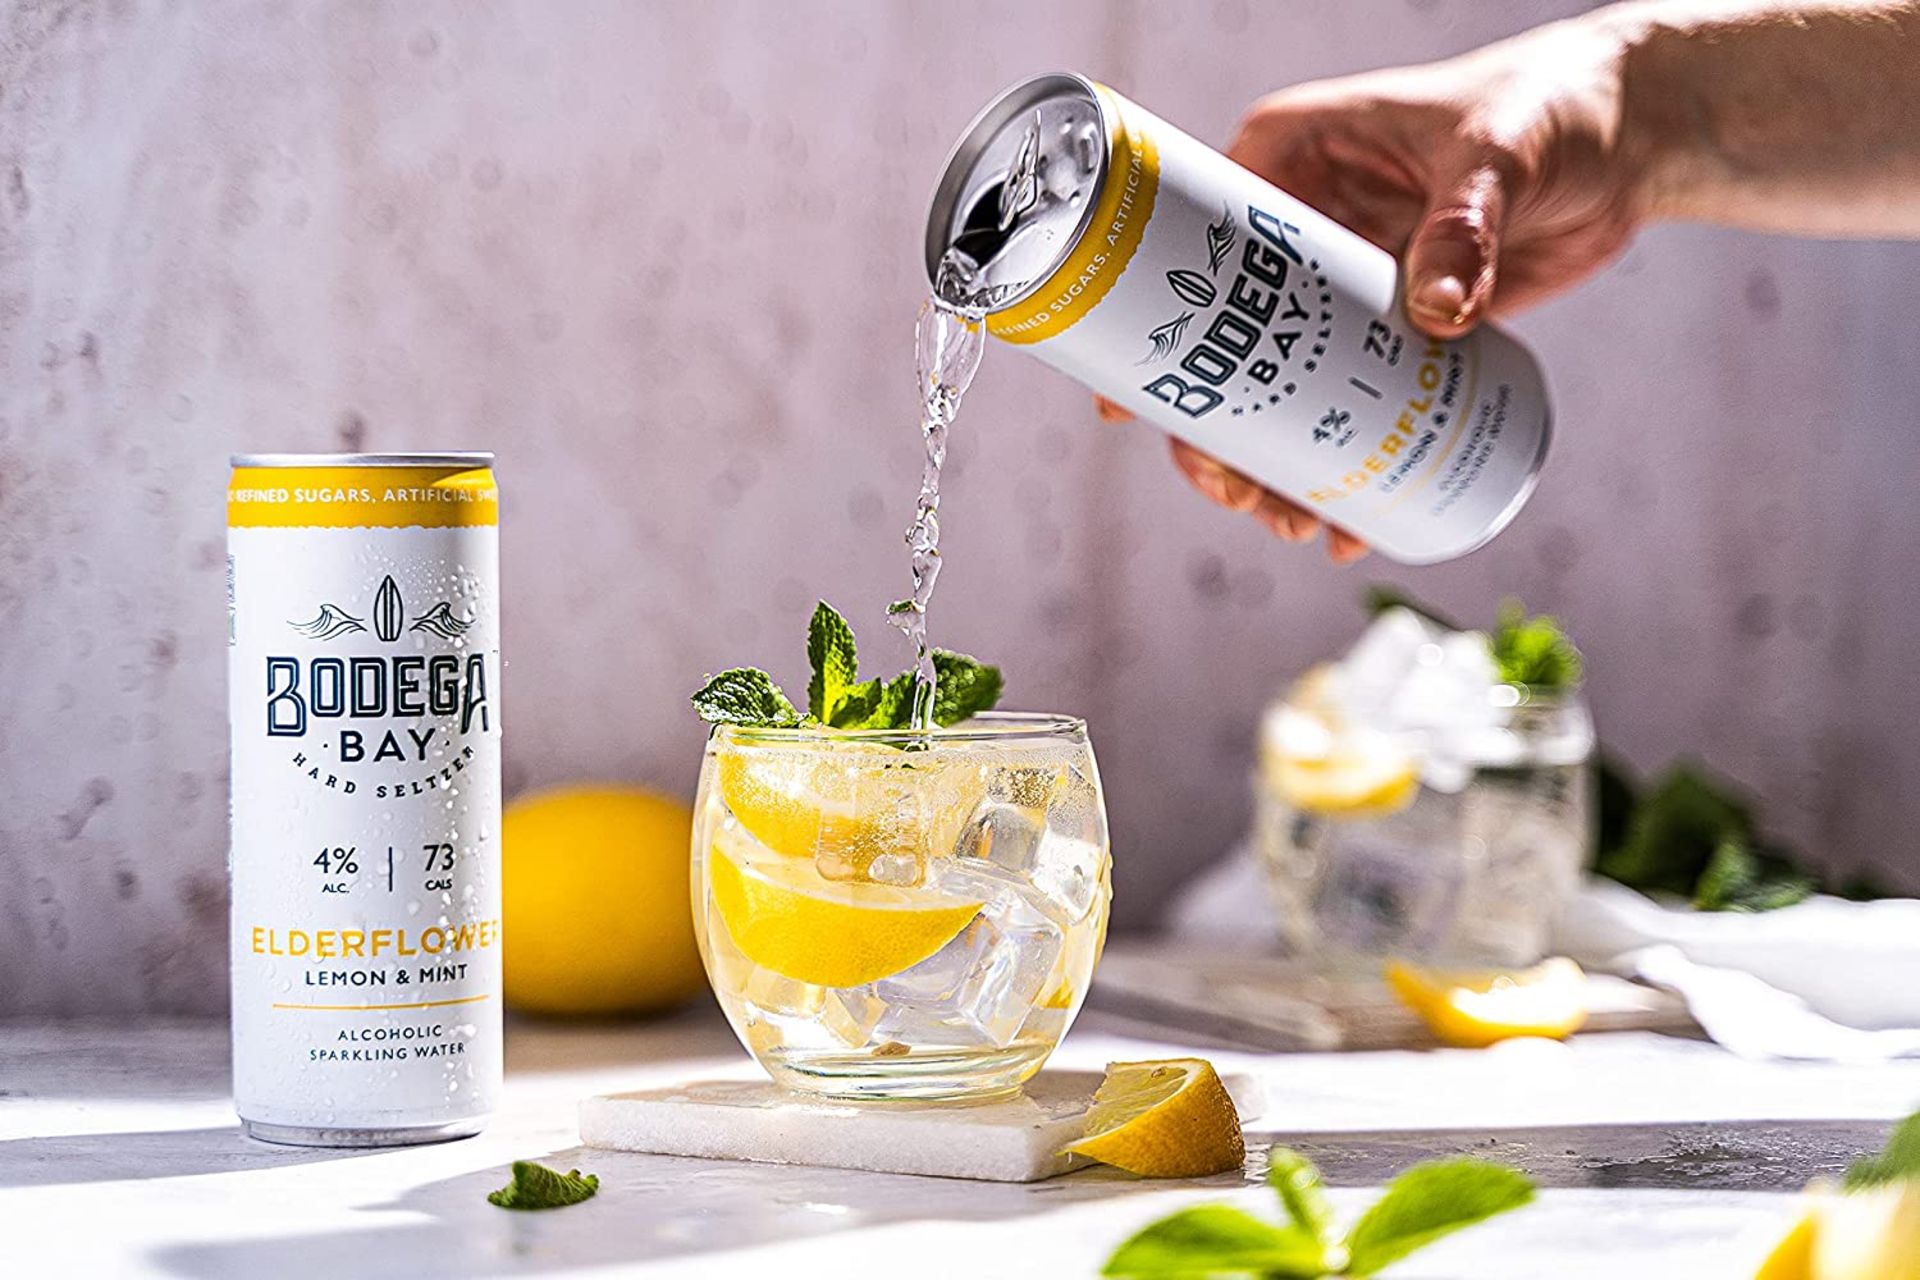 24 x Bodega Bay Hard Seltzer 250ml Alcoholic Sparkling Water Drinks - Elderflower Lemon & Mint - - Image 7 of 9